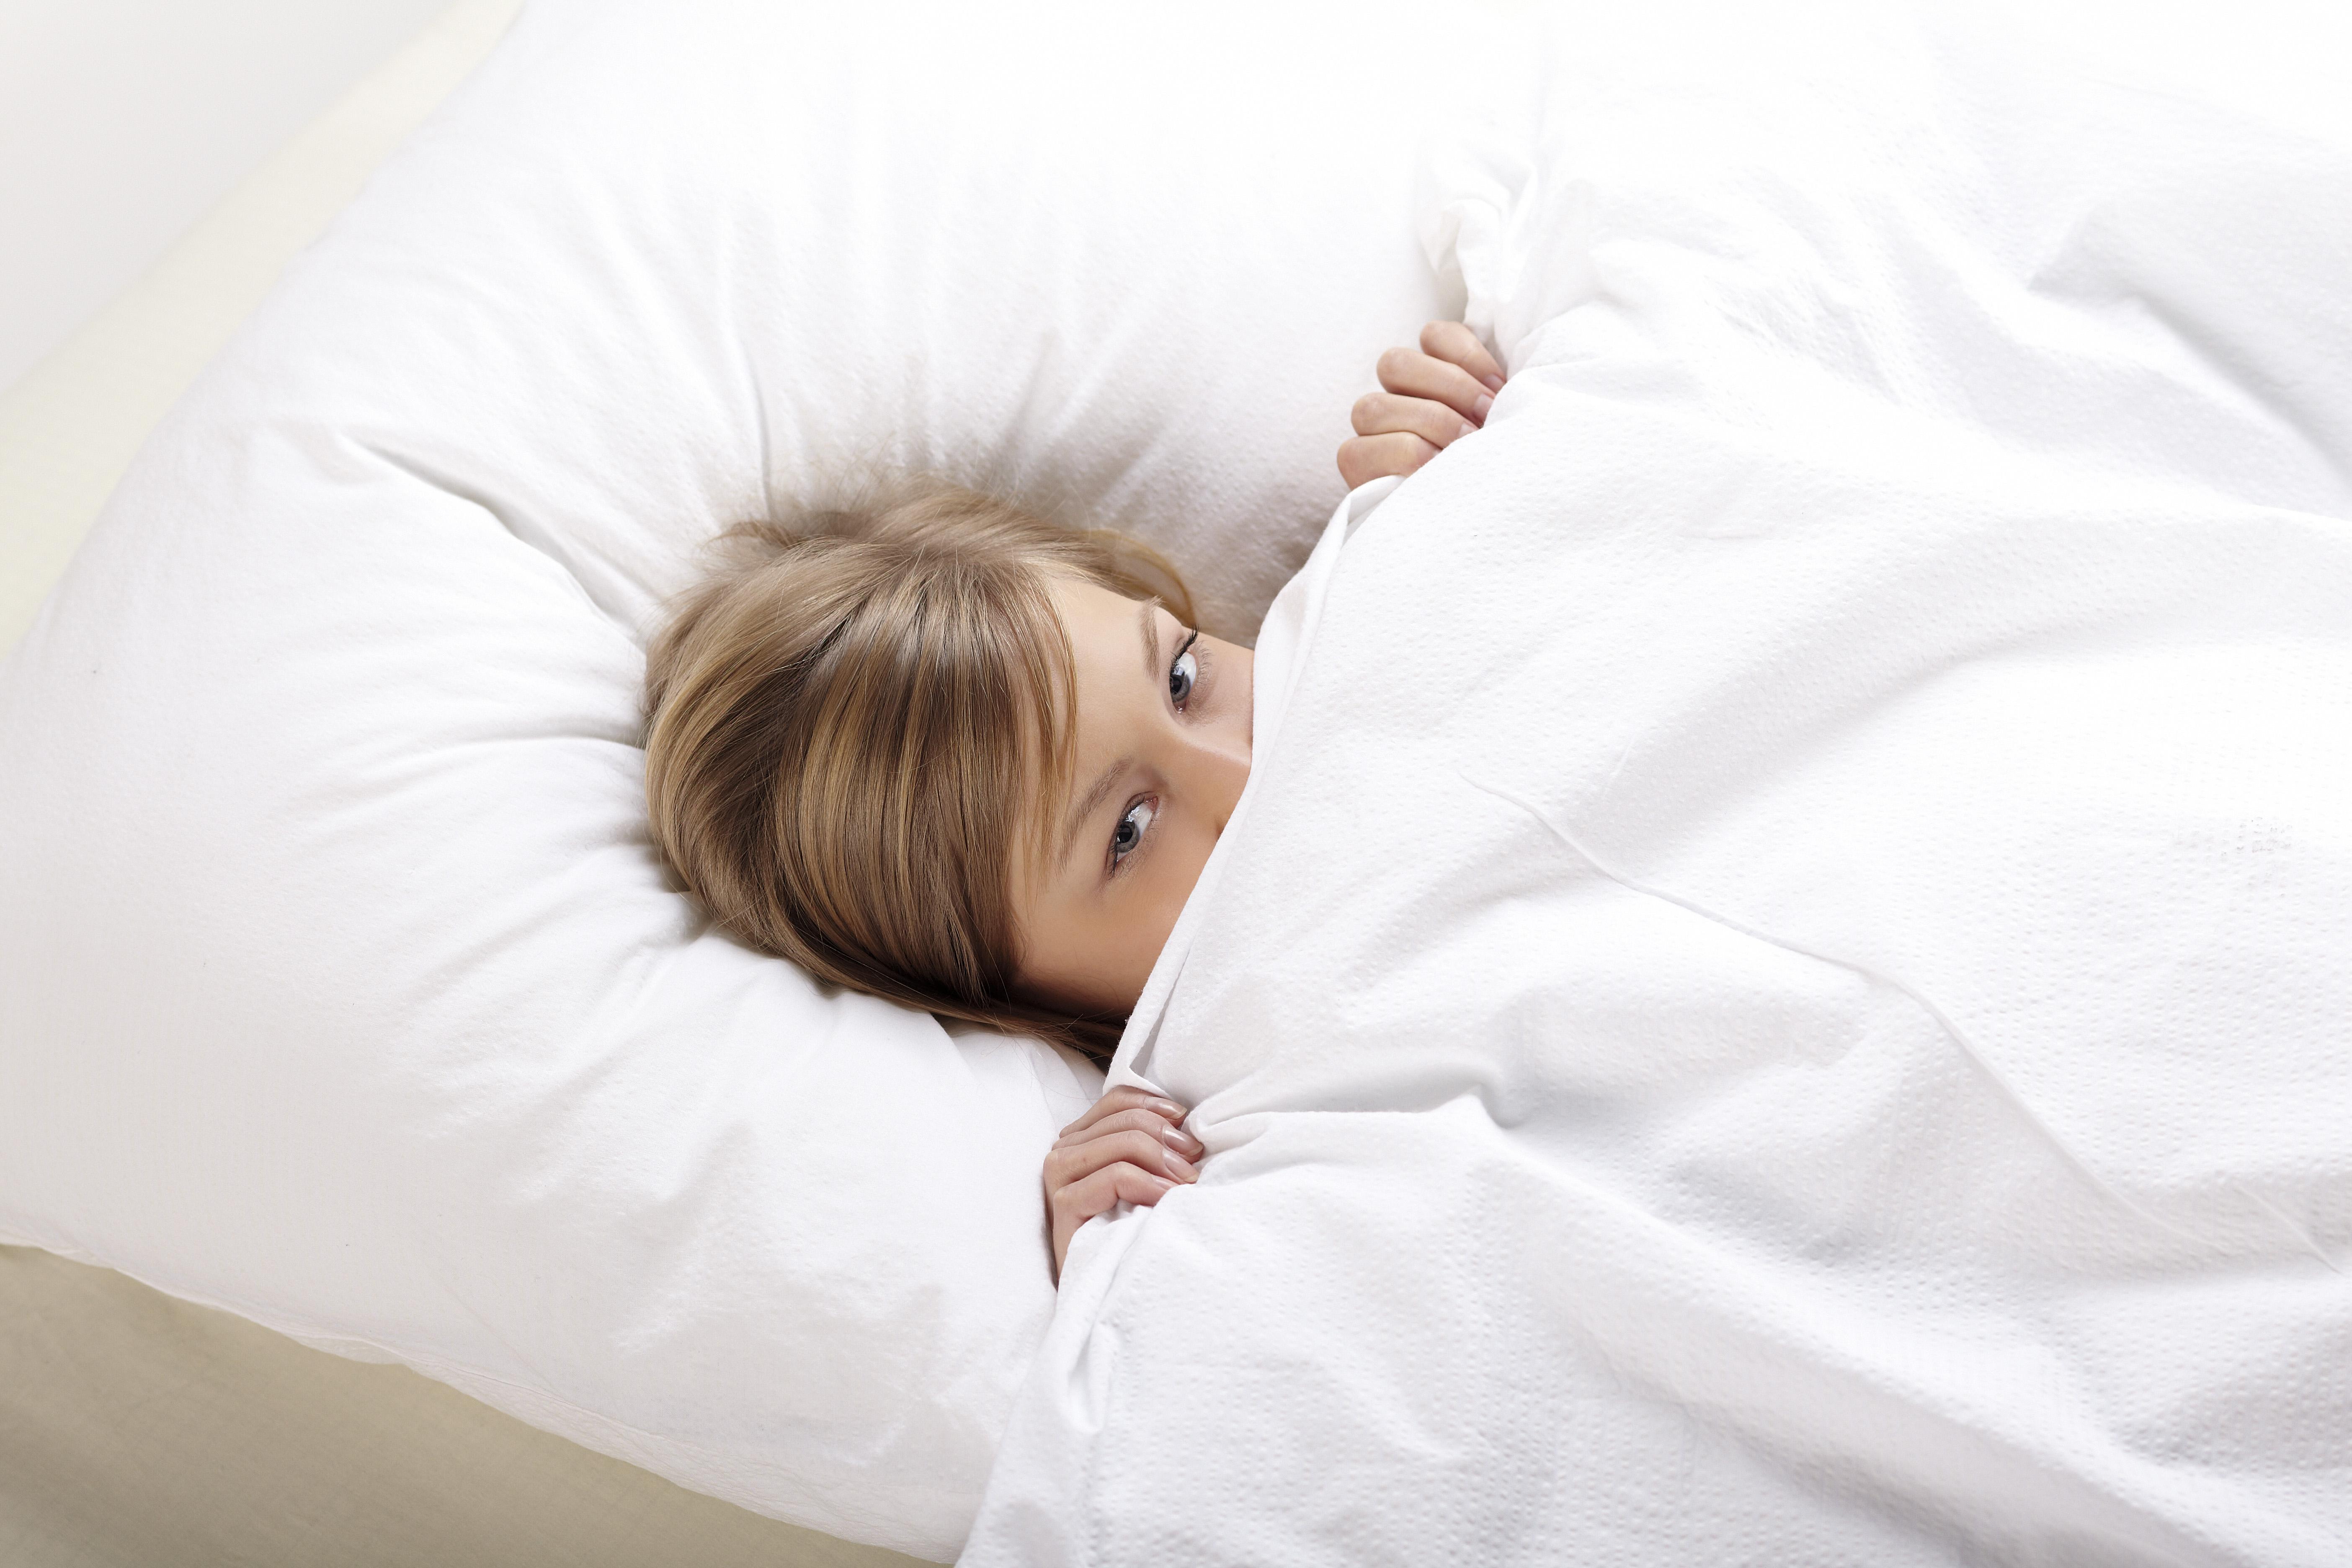 Эксперты рассказали, под каким одеялом следует спать, чтобы иметь здоровый сон